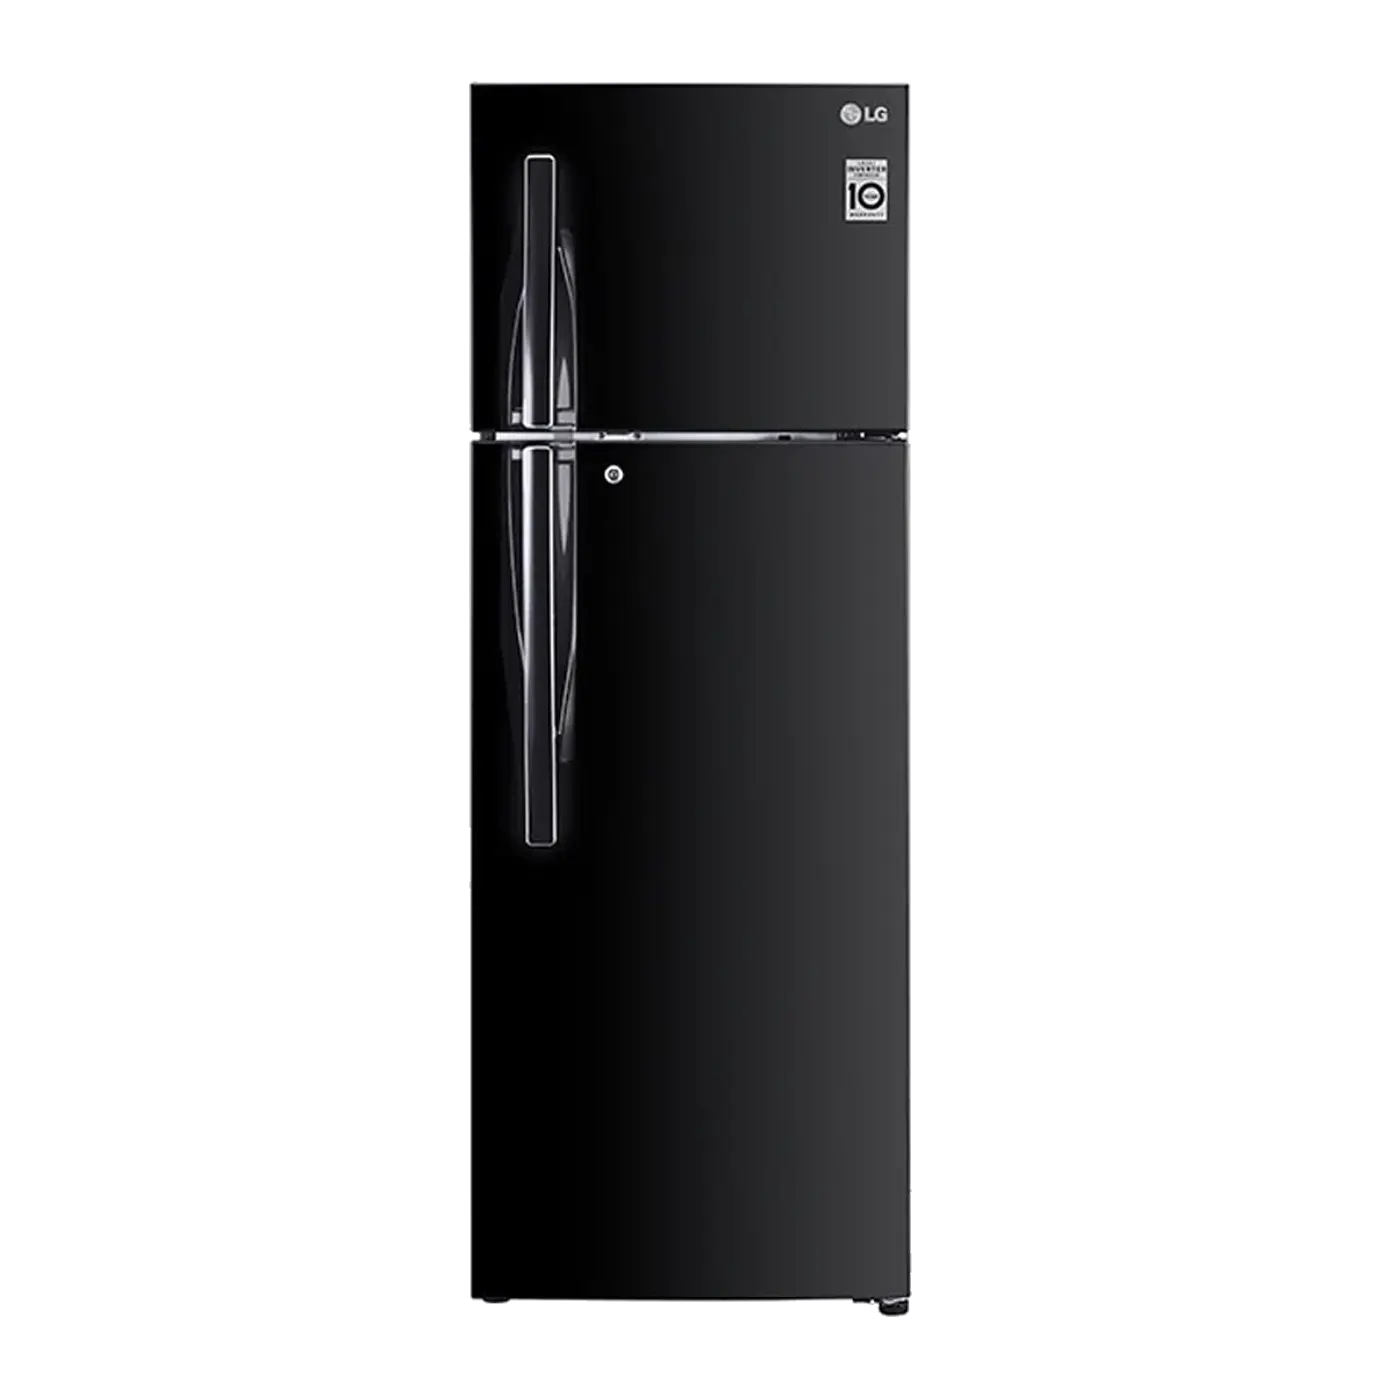 LG - Refrigerator 308L Convertible Double Door with Smart Inverter Compressor